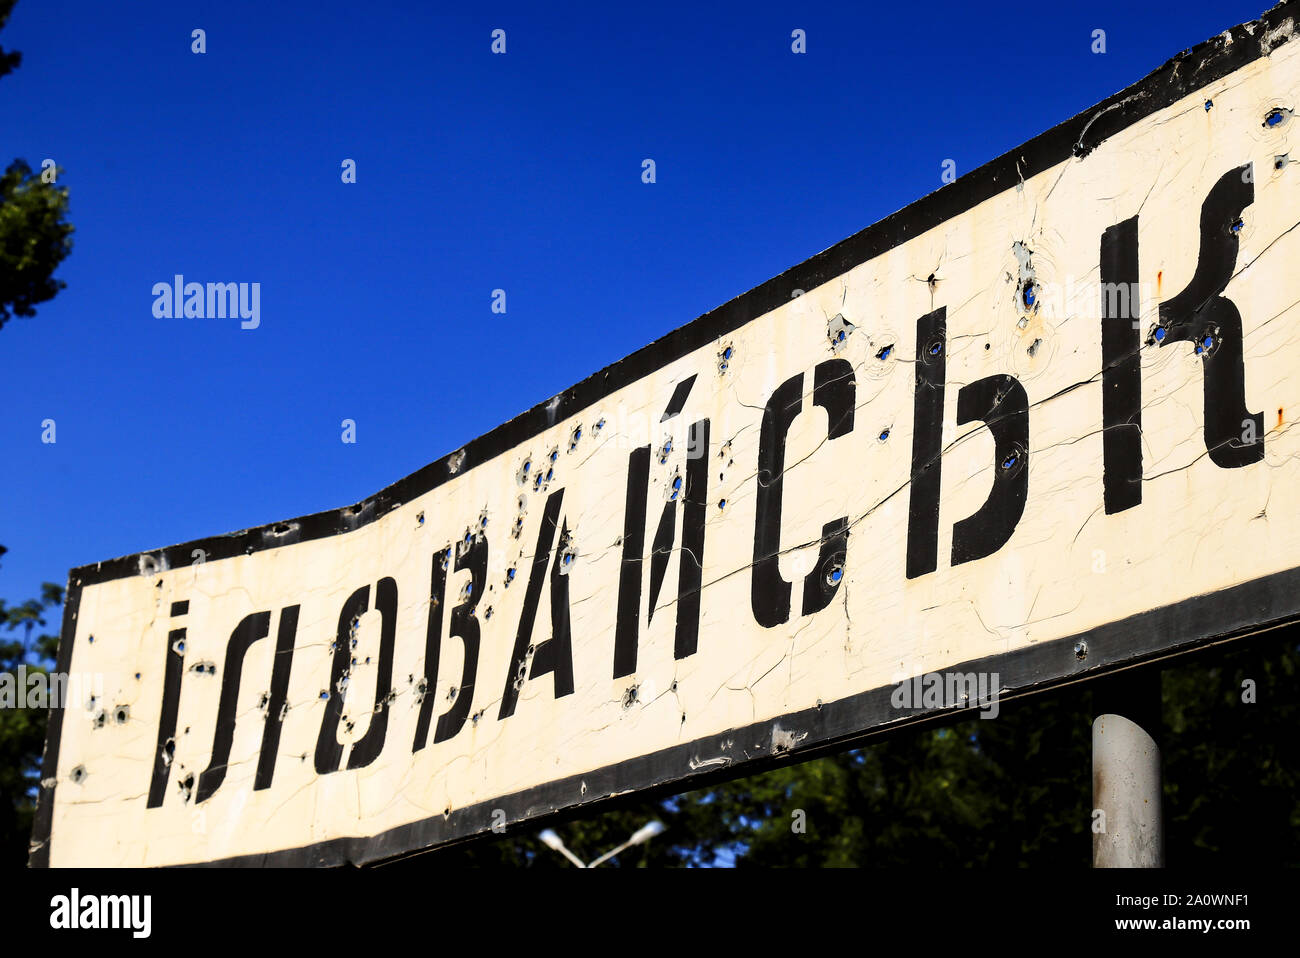 Cartello stradale con la scritta in Ucraino - Illowaysk, Donetsk regione, rotto da proiettili durante la guerra in Donbass, Ucraina. Conflitti Armati Foto Stock